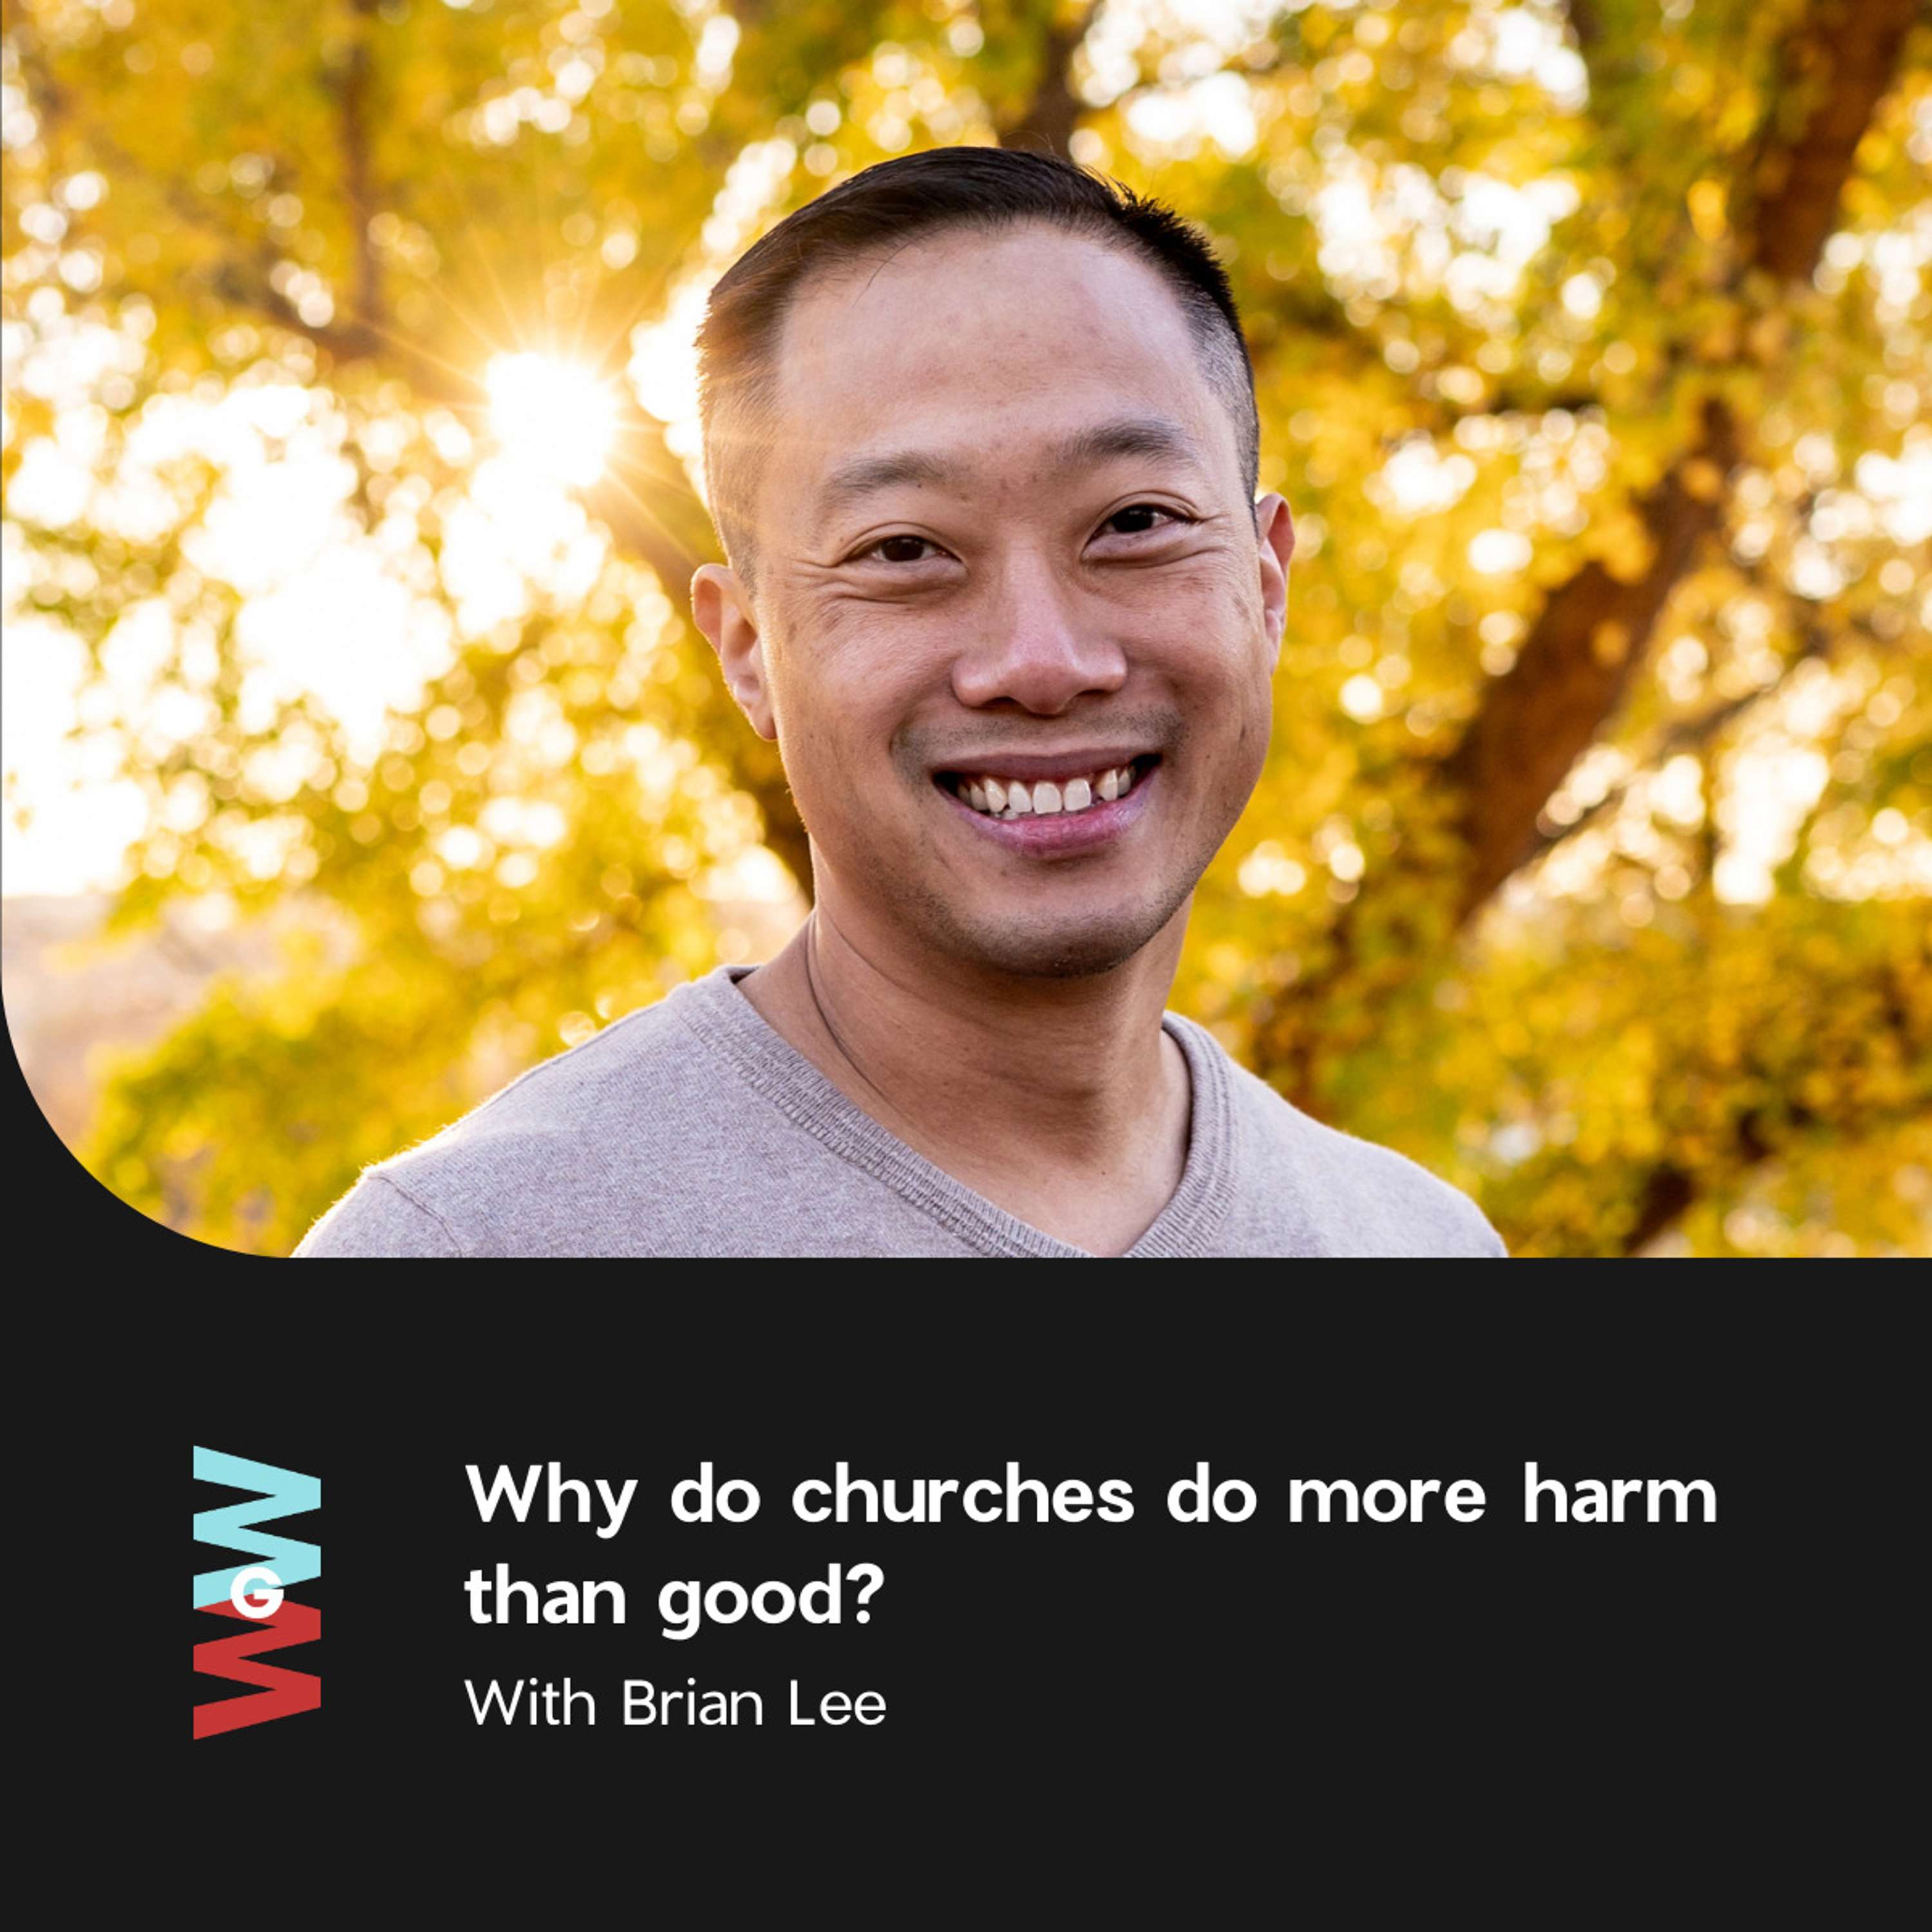 Brian Lee - Why do churches do more harm than good?